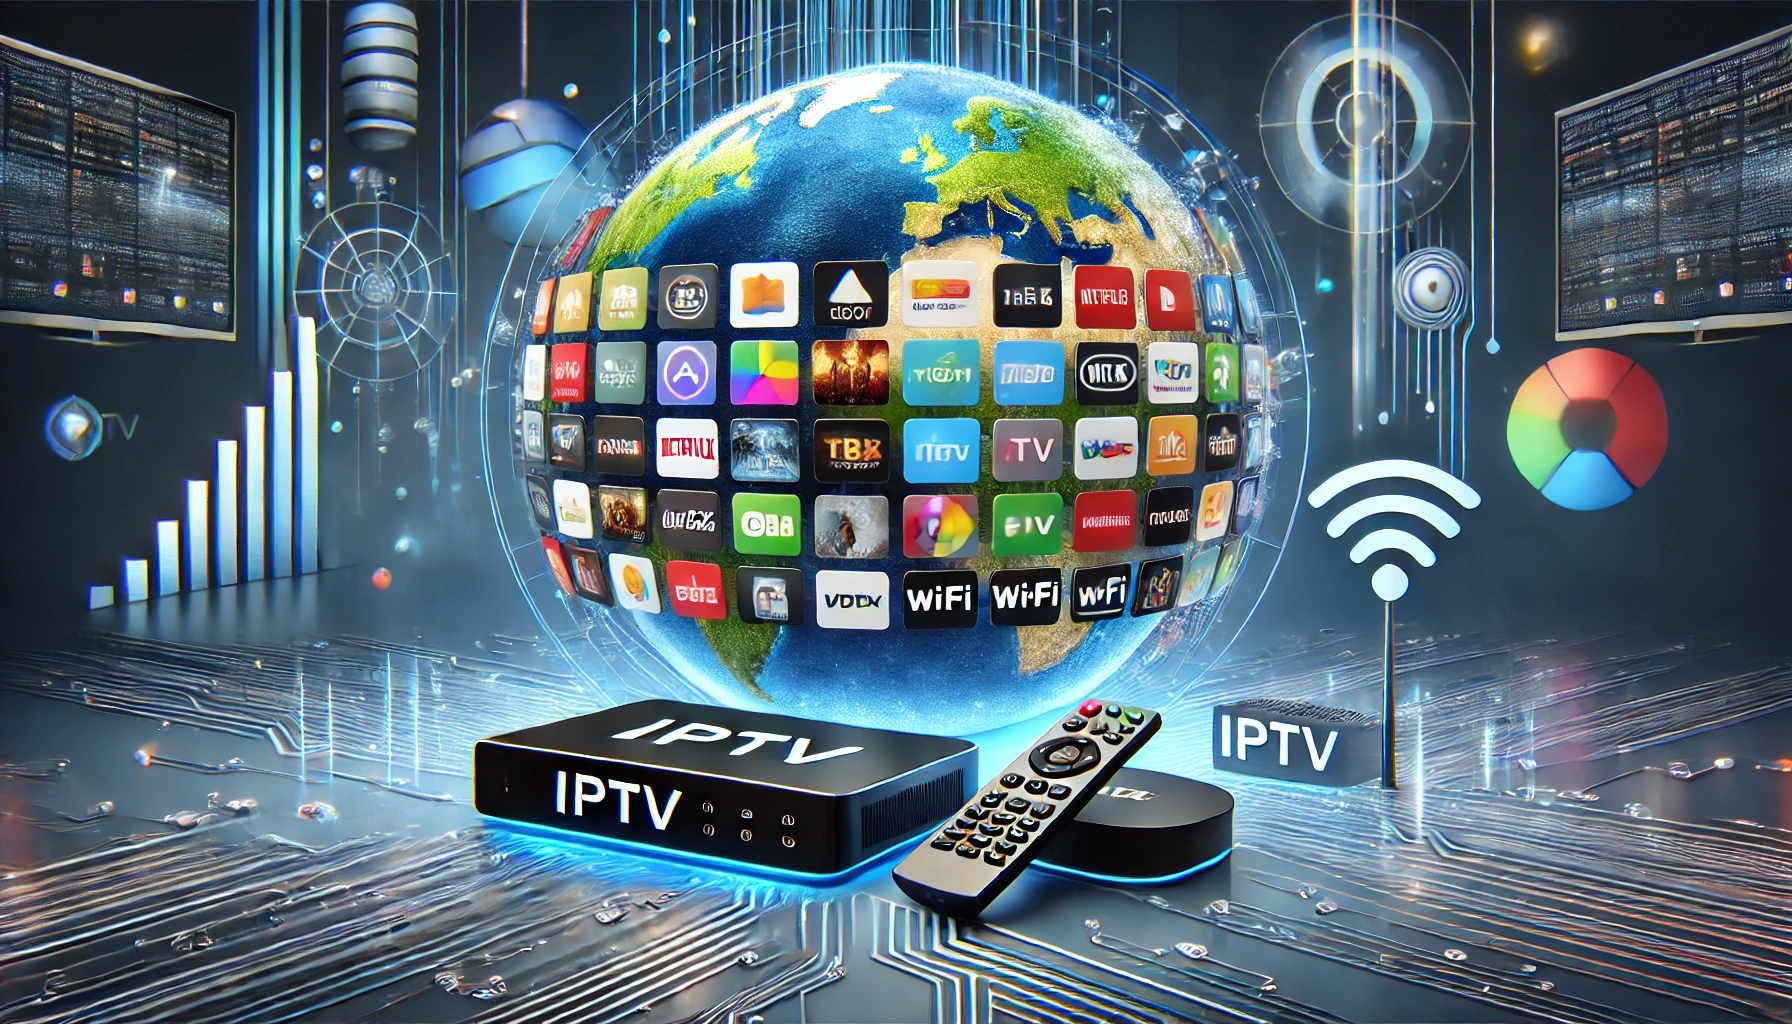 IPTV wereldwijd kijken